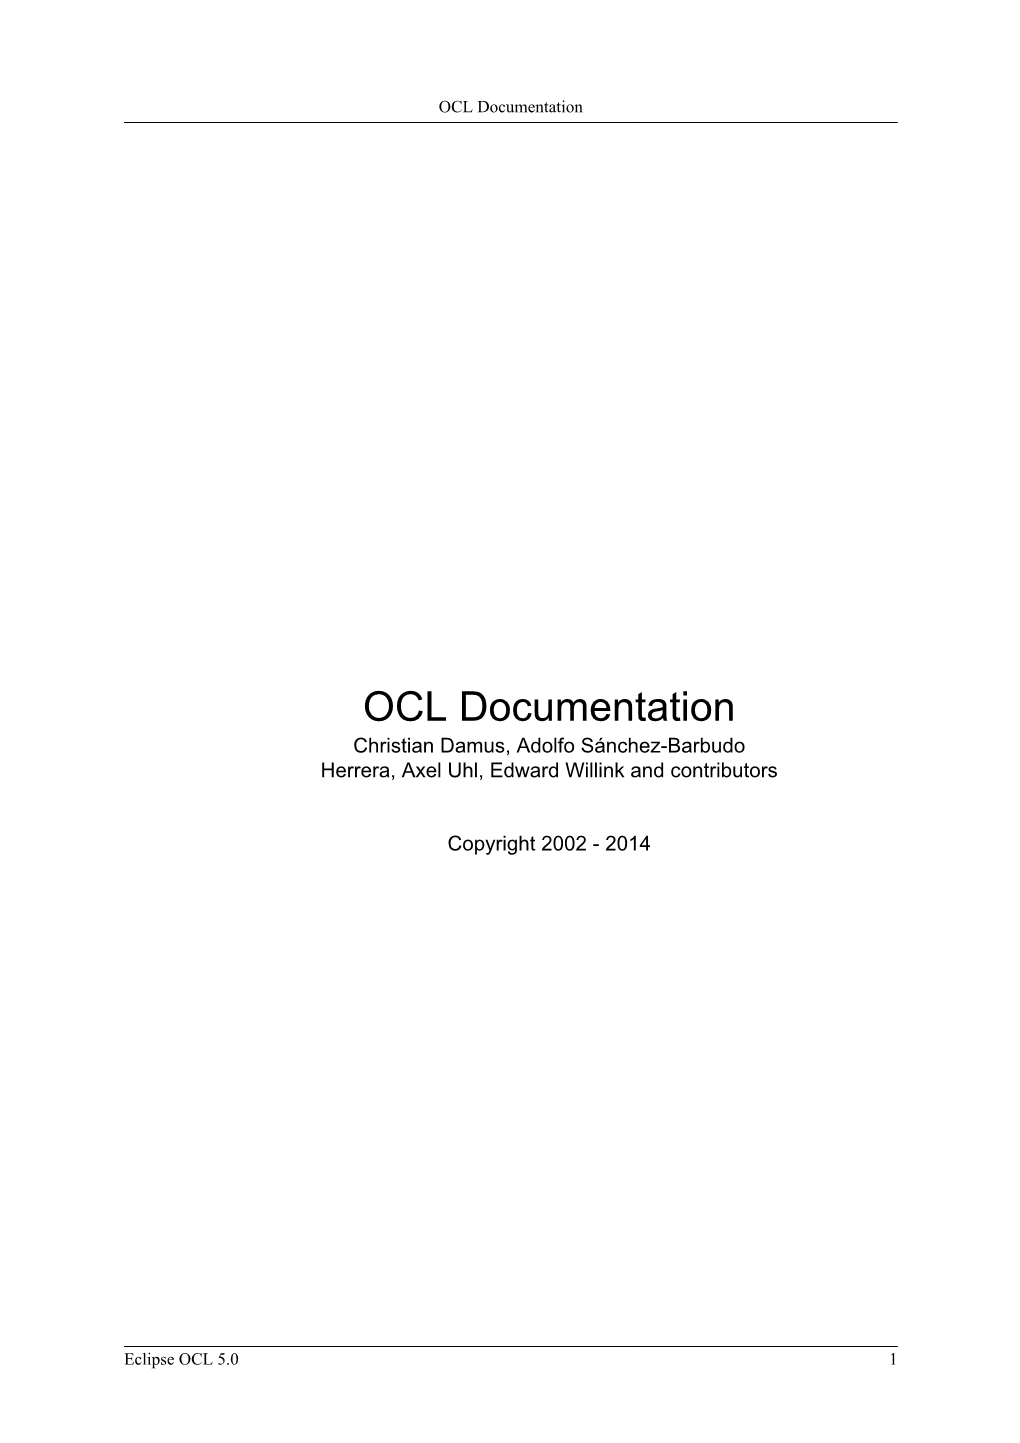 2.11. OCL in UML (Using Papyrus)